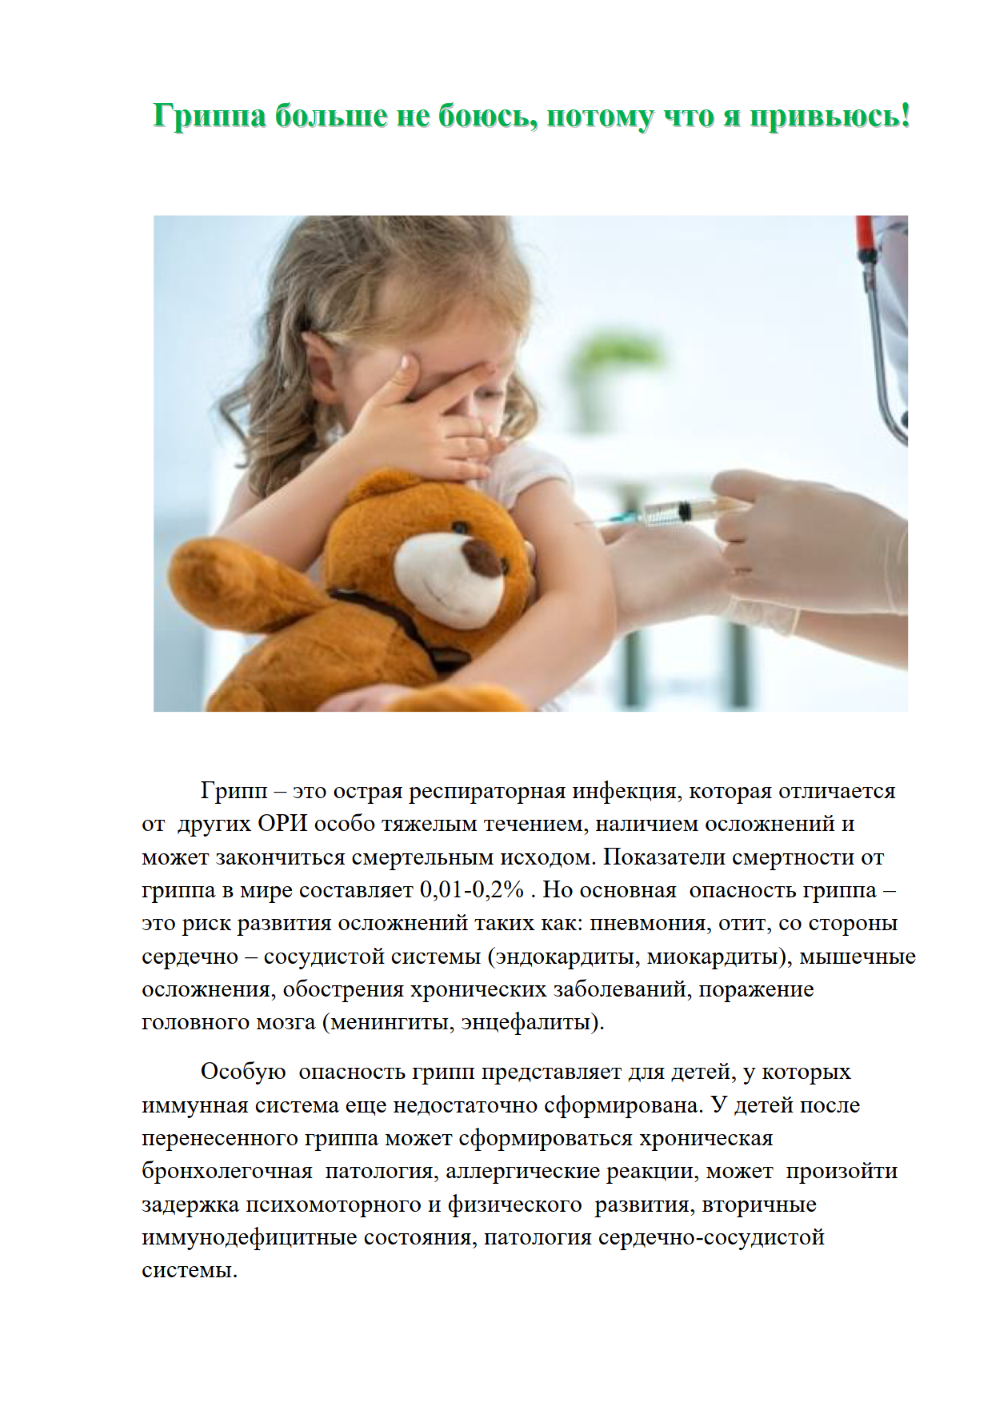 Гриппе 2020. Вакцинация от гриппа 2020 Тольятти. Как лечить грипп 2020.